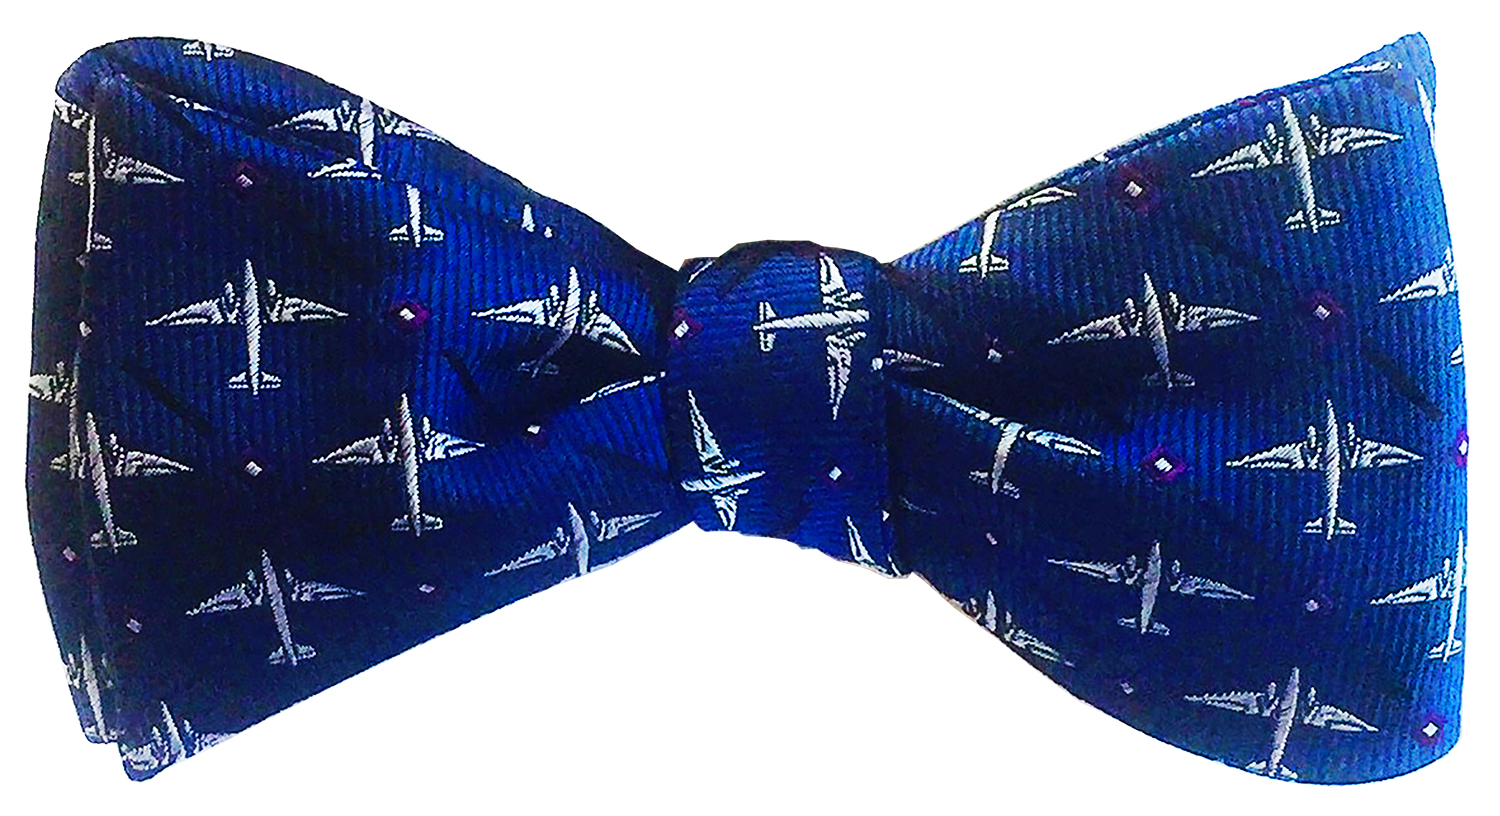 doppeldecker design designer aviation aircraft silk bow tie bowtie dc-3 dc3 c47 c-47